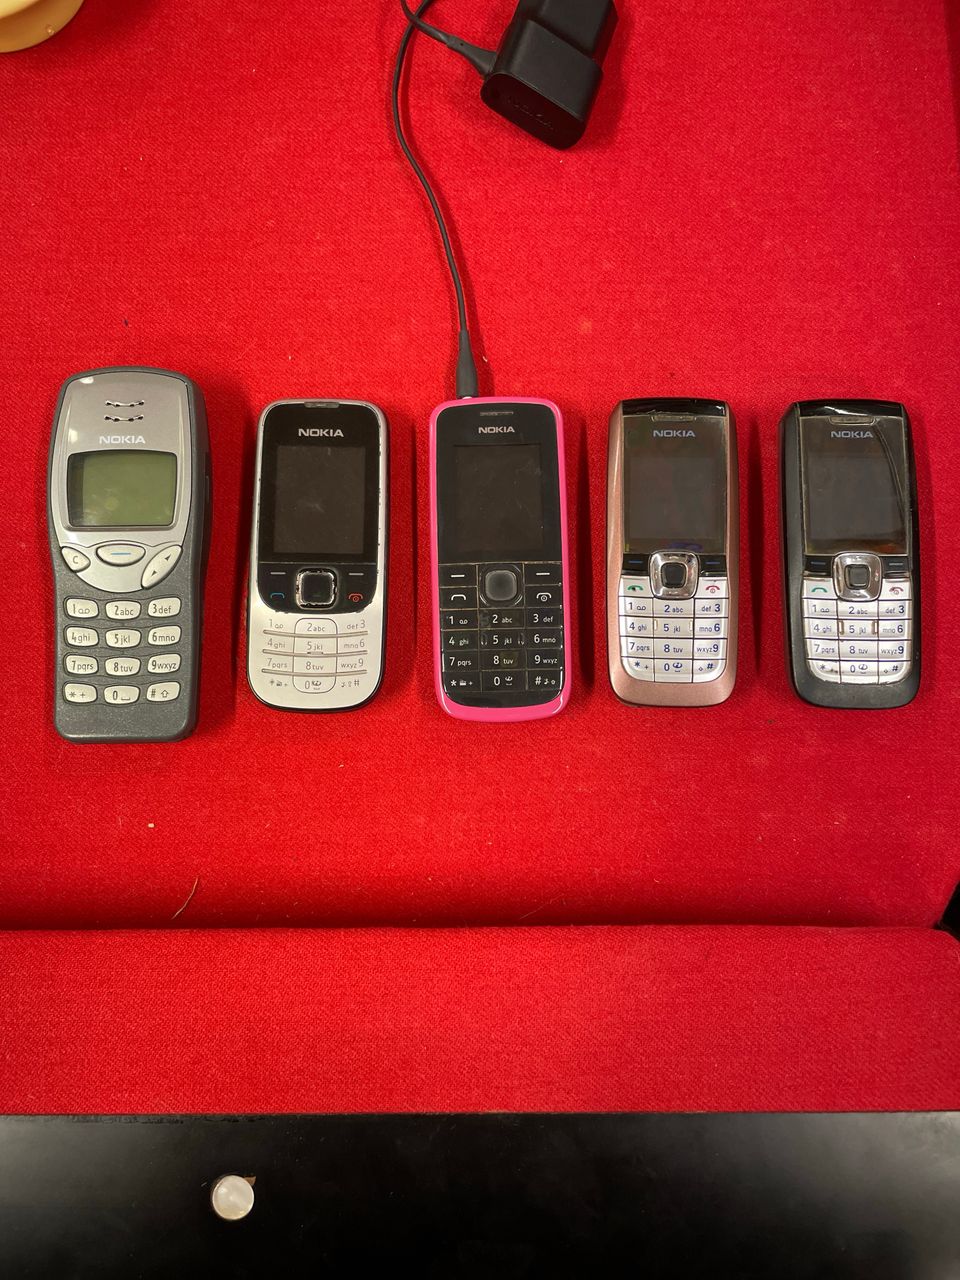 Nokia matkapuhelin